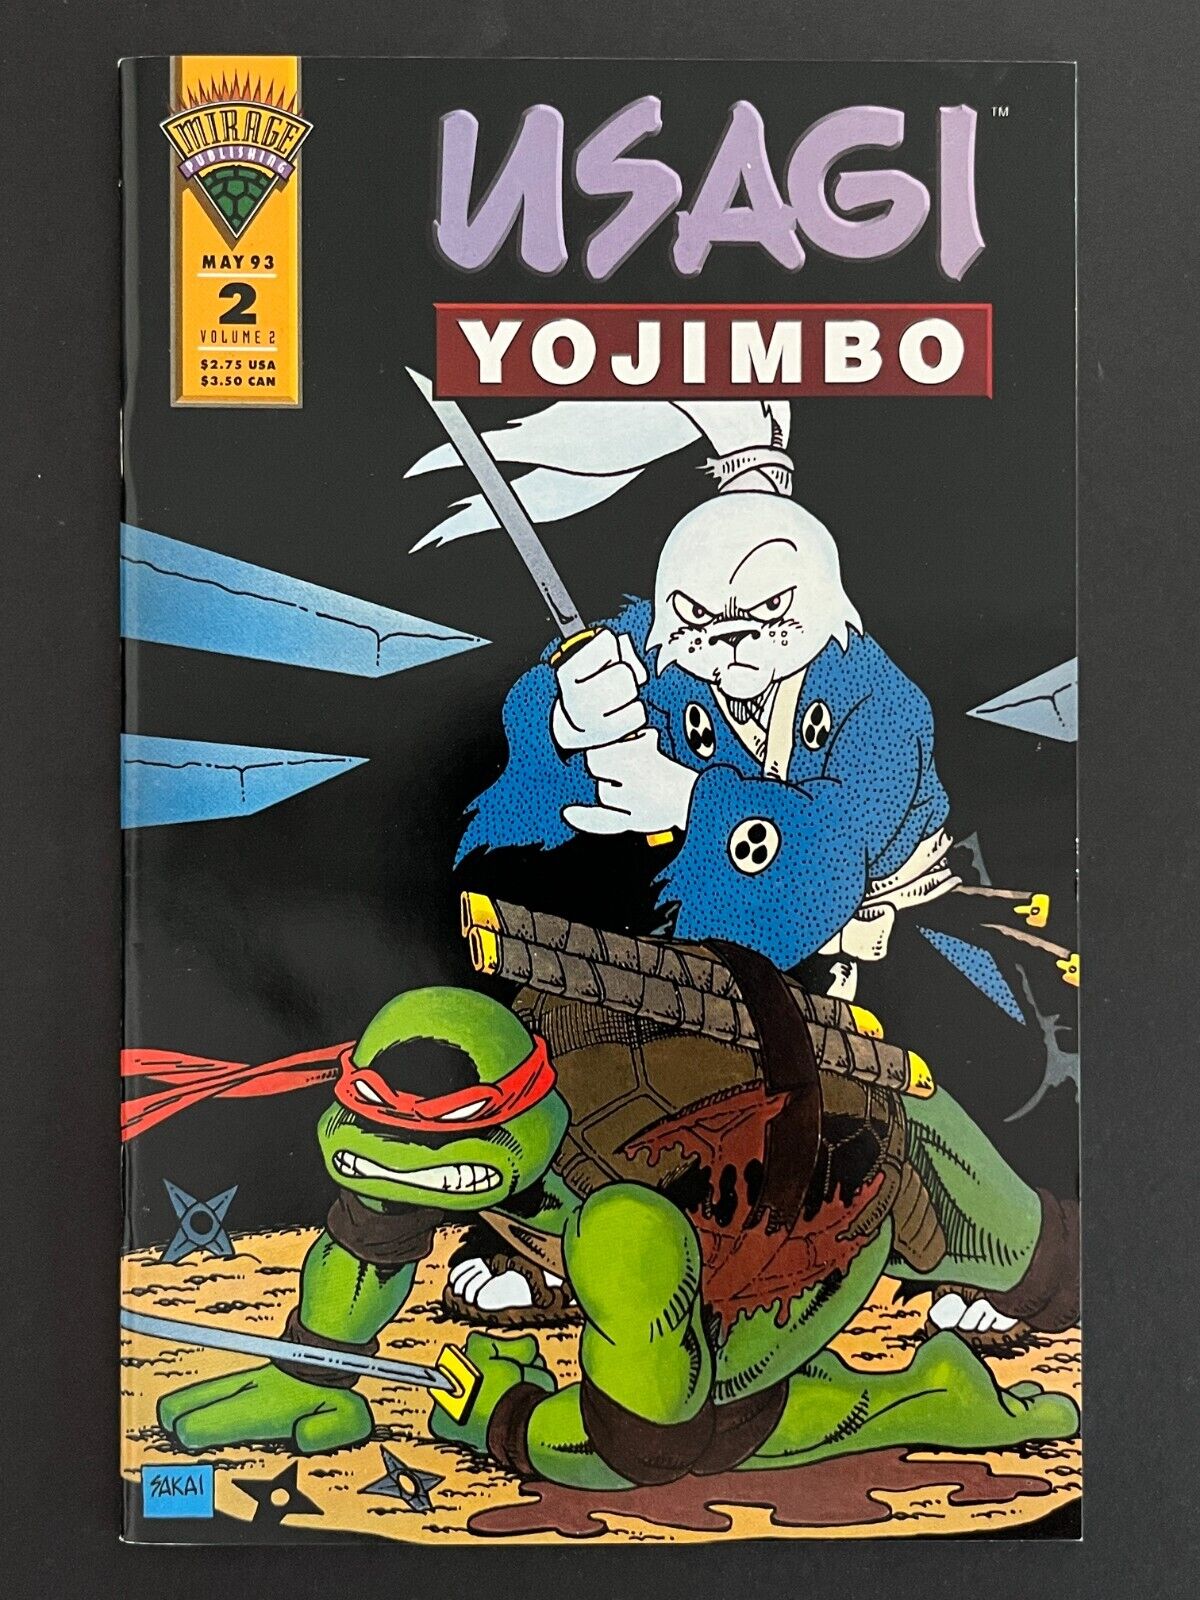 Usagi Yojimbo (volume 2) #2 - #8 SINGLE ISSUES (Mirage, 1993, 1994, TMNT app.)